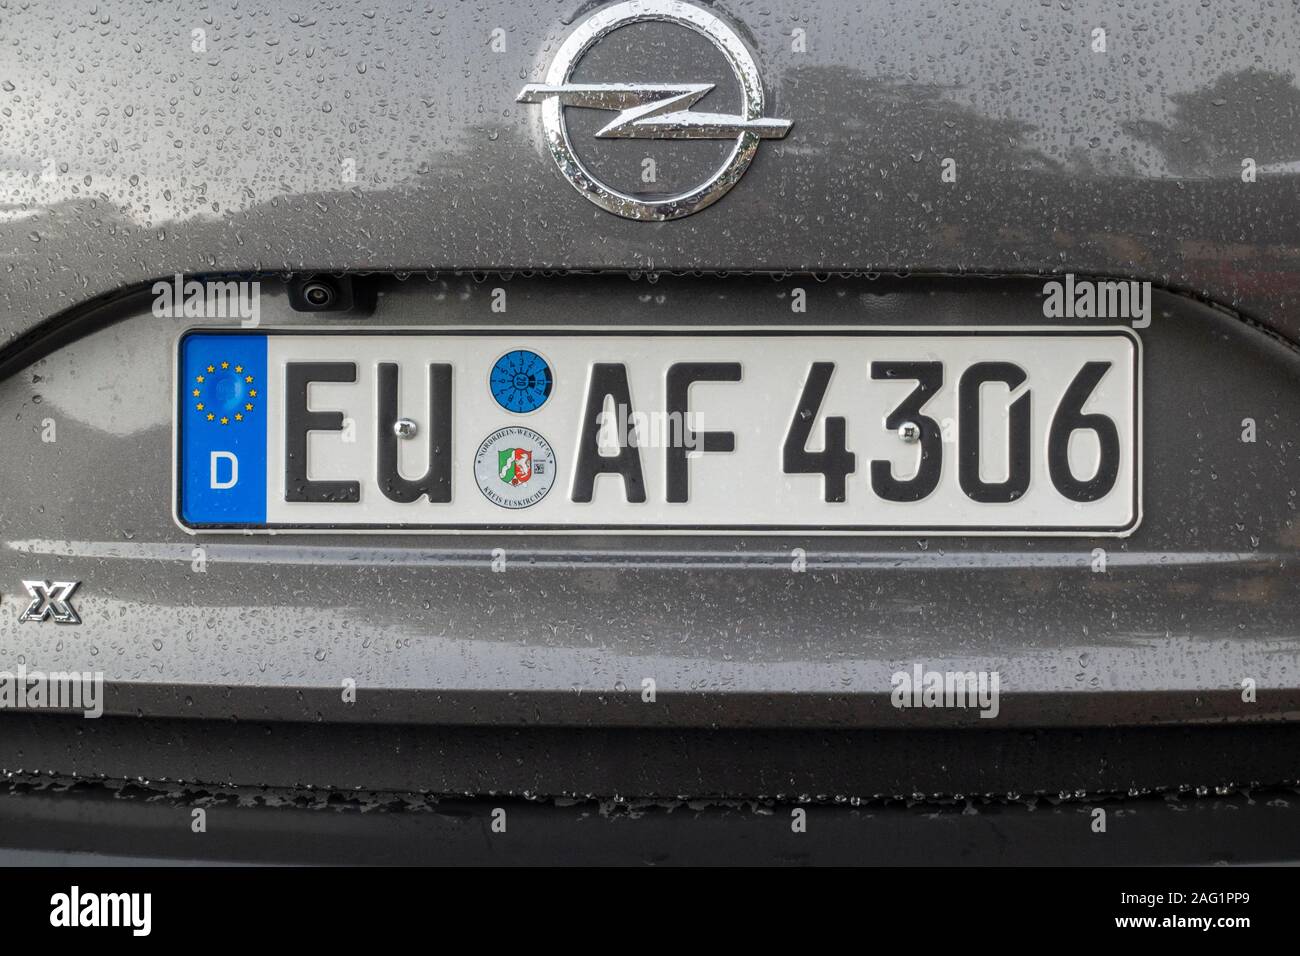 Deutsches Autokennzeichen auf einem Opel-Fahrzeug 2019. Stockfoto